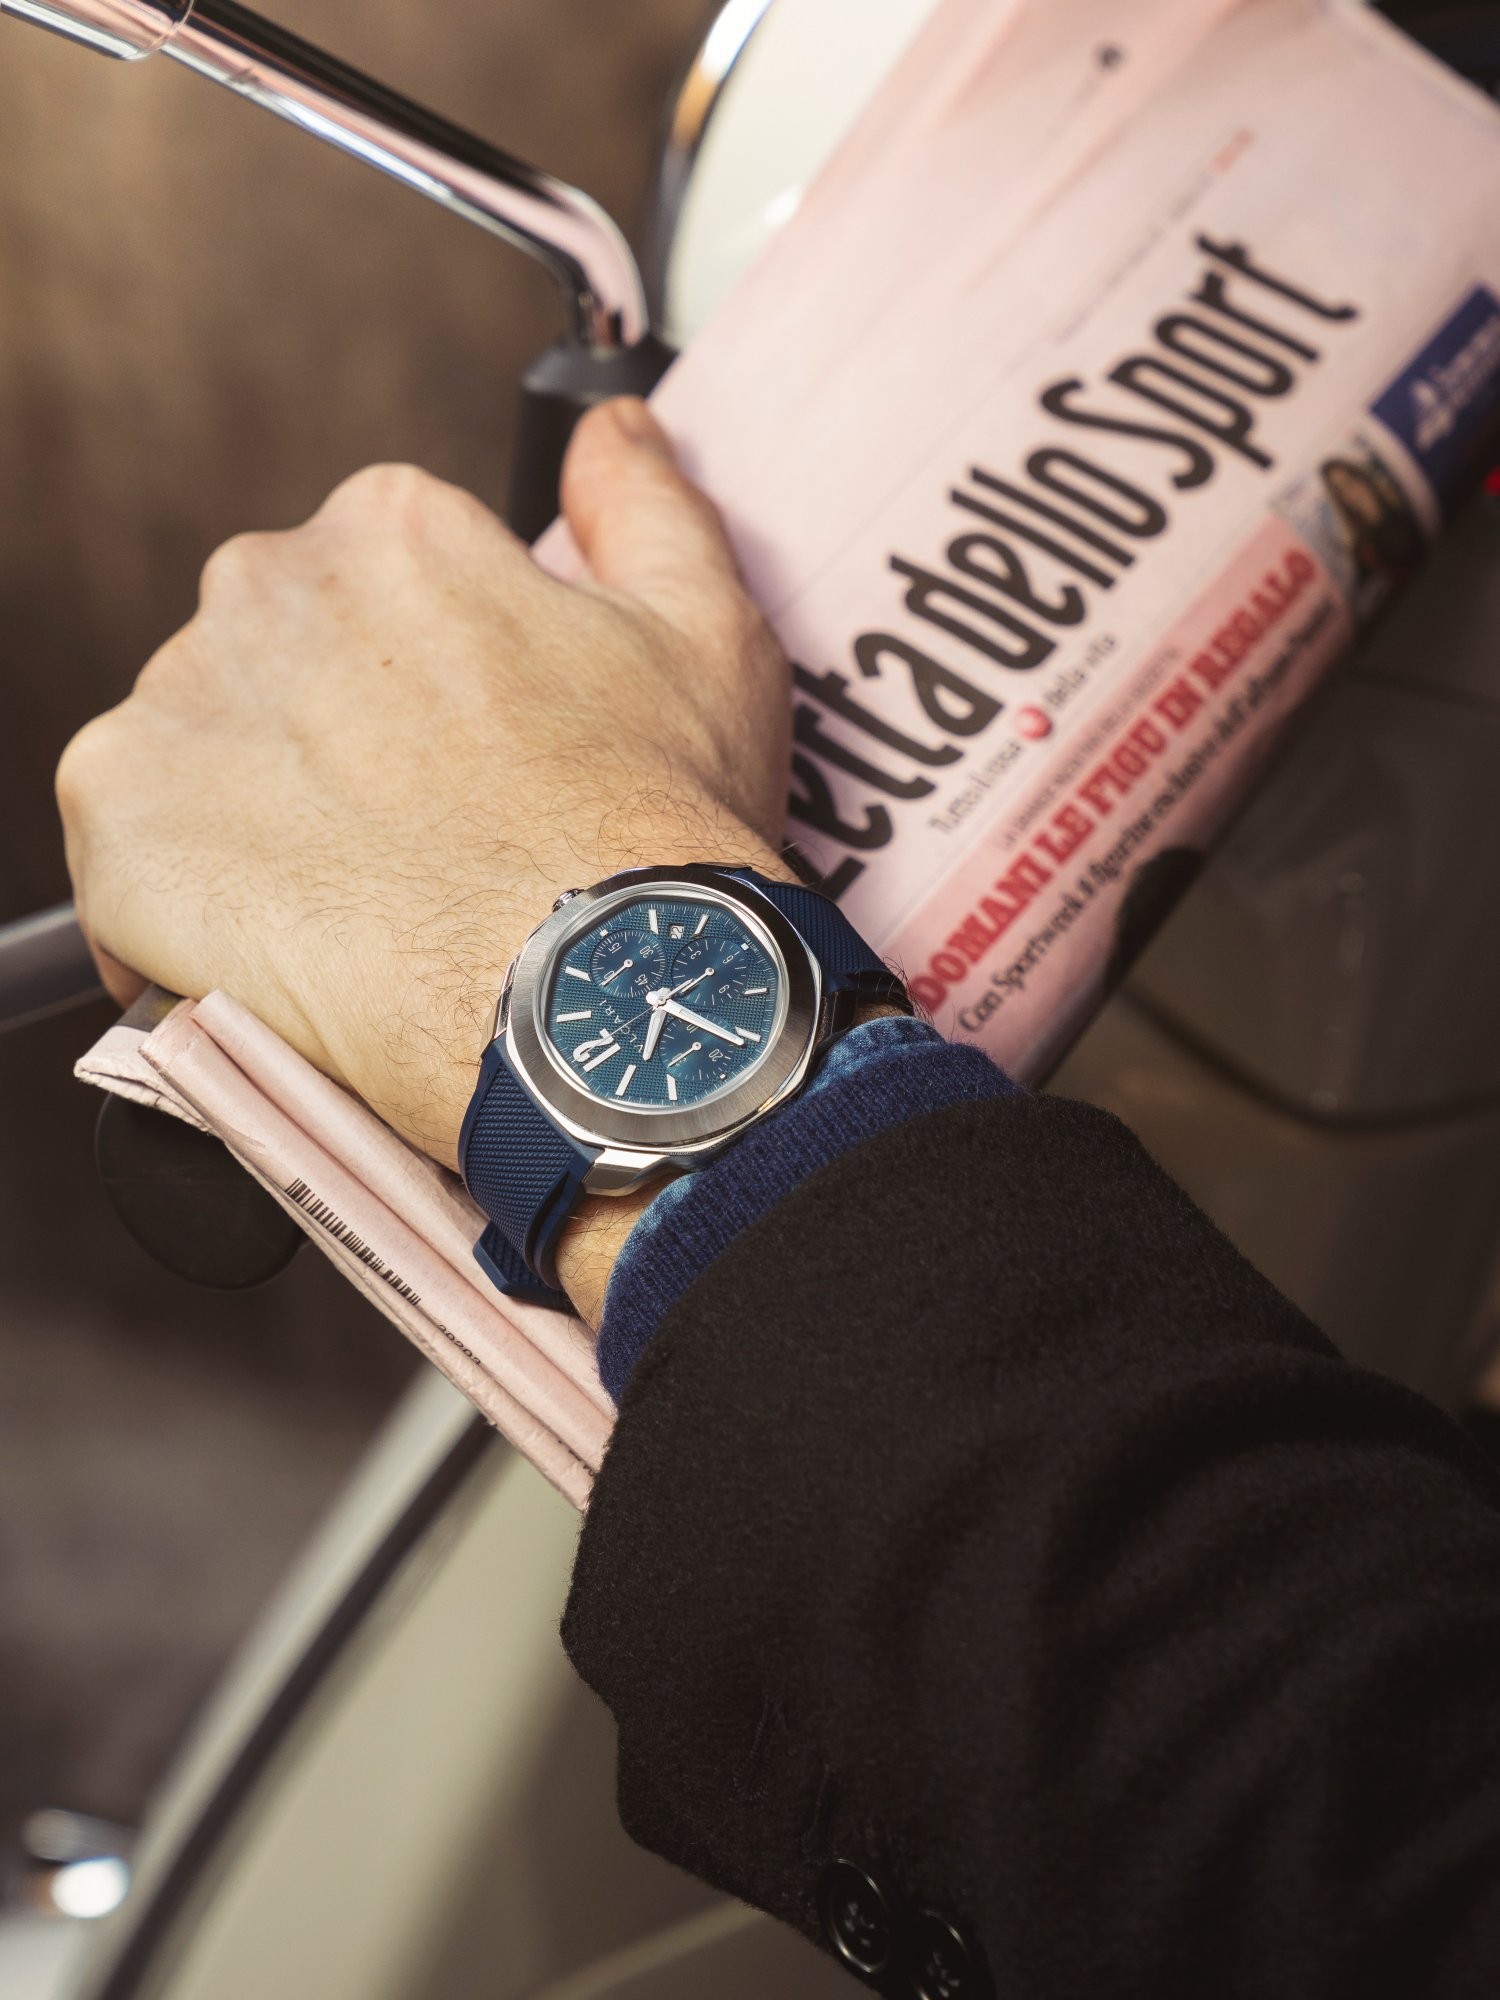 全新設計的Octo Roma，定位是日常生活佩戴用錶，面盤並飾以「巴黎釘紋」，在當代設計風格的錶殼帶著古典製錶的細節。